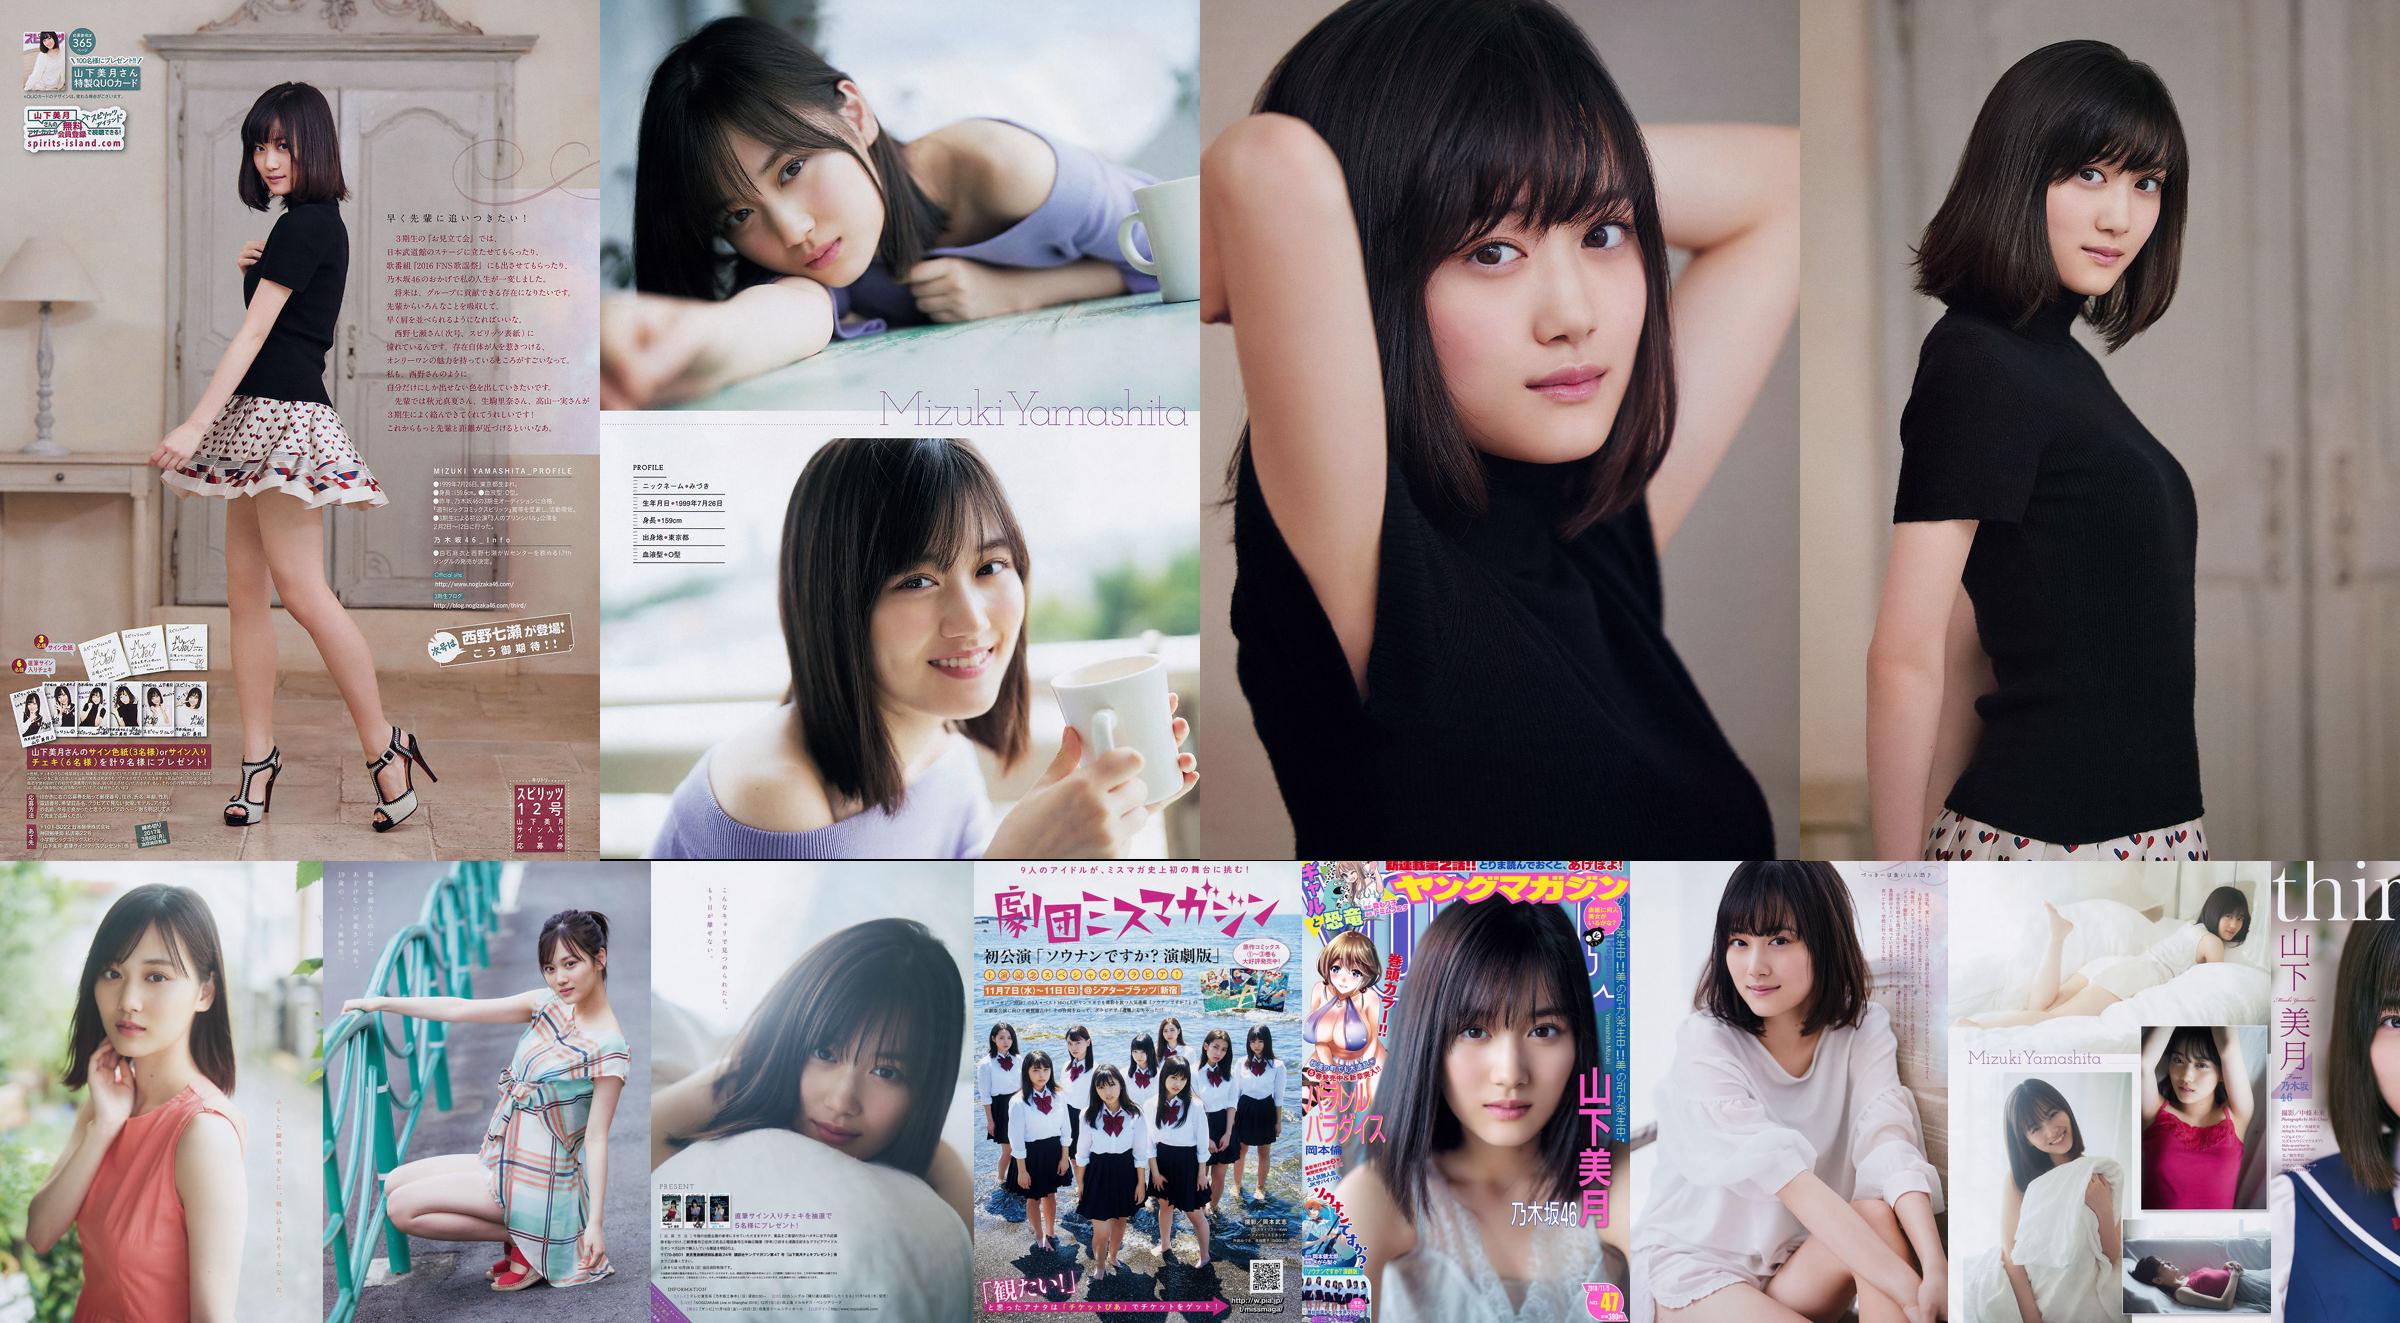 [Young Magazine] 山下美月 Mizuki Yamashita 2018年No.47 写真杂志 No.4eea4c 第1页